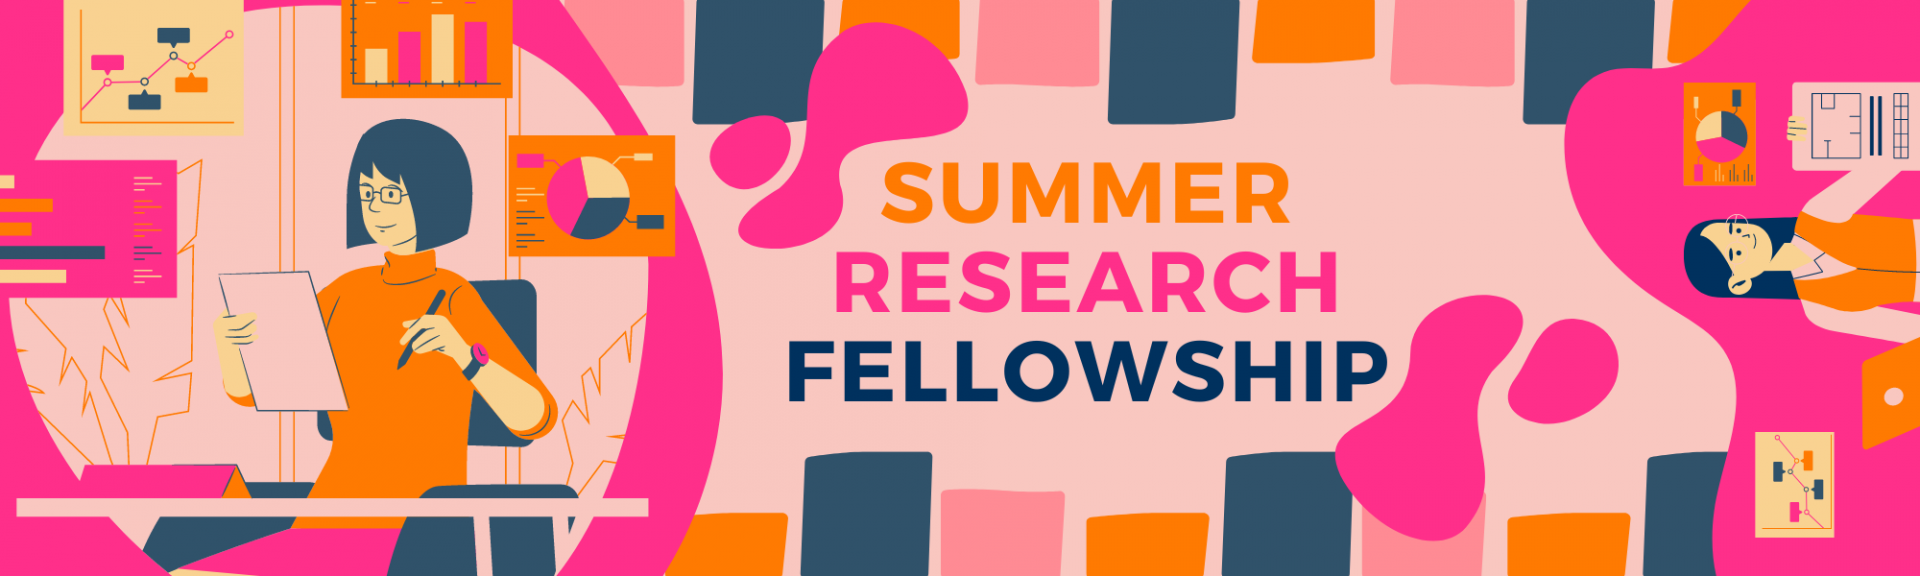 Summer Research Fellowship banner